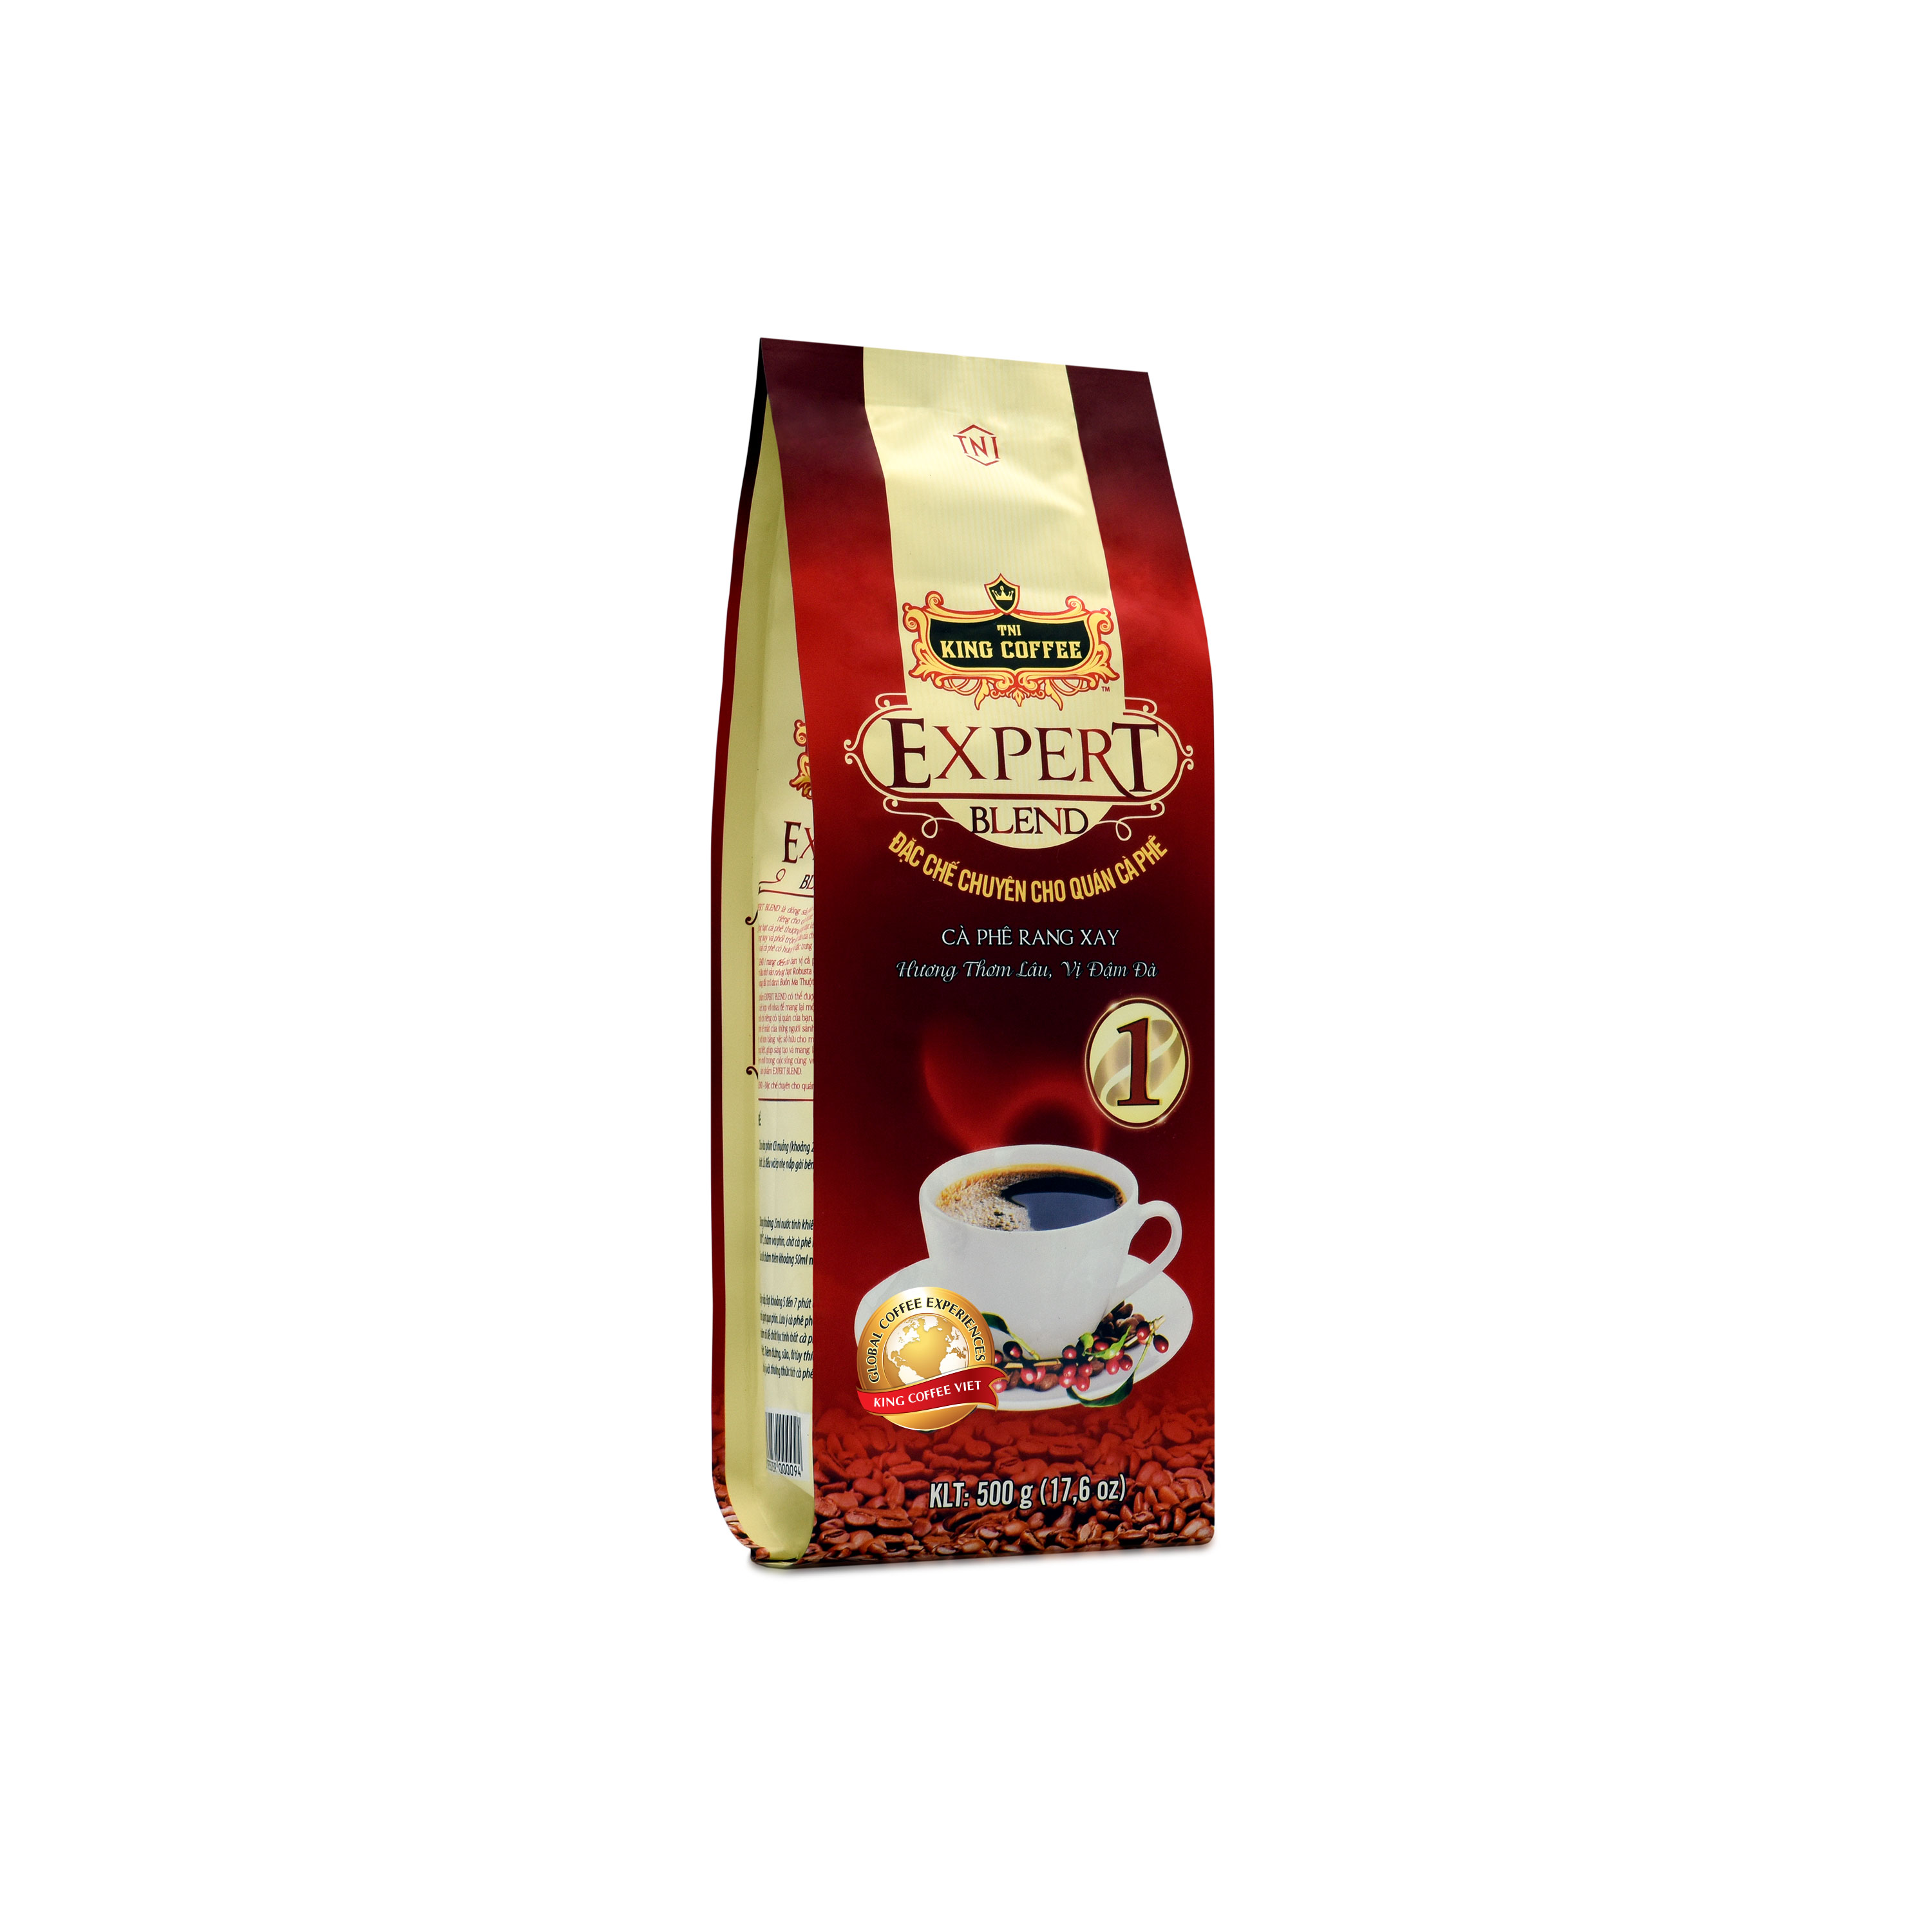 Combo 5 Cà Phê Rang Xay Expert Blend 1 KING COFFEE - Túi 500g + tặng 1 Phin Cà Phê Trắng